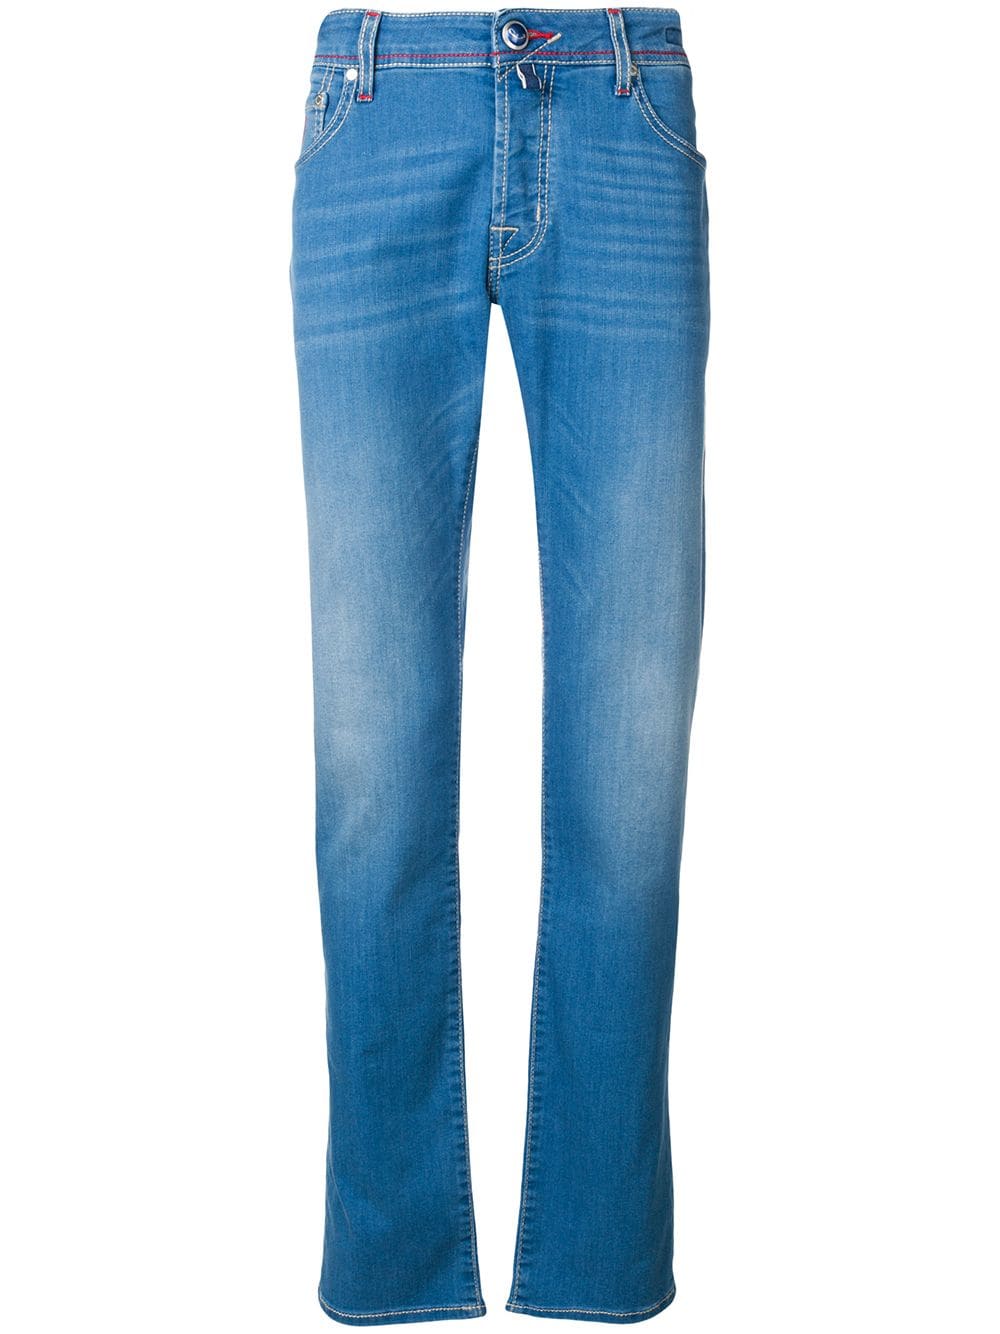 фото Jacob cohen джинсы с завышенной талией